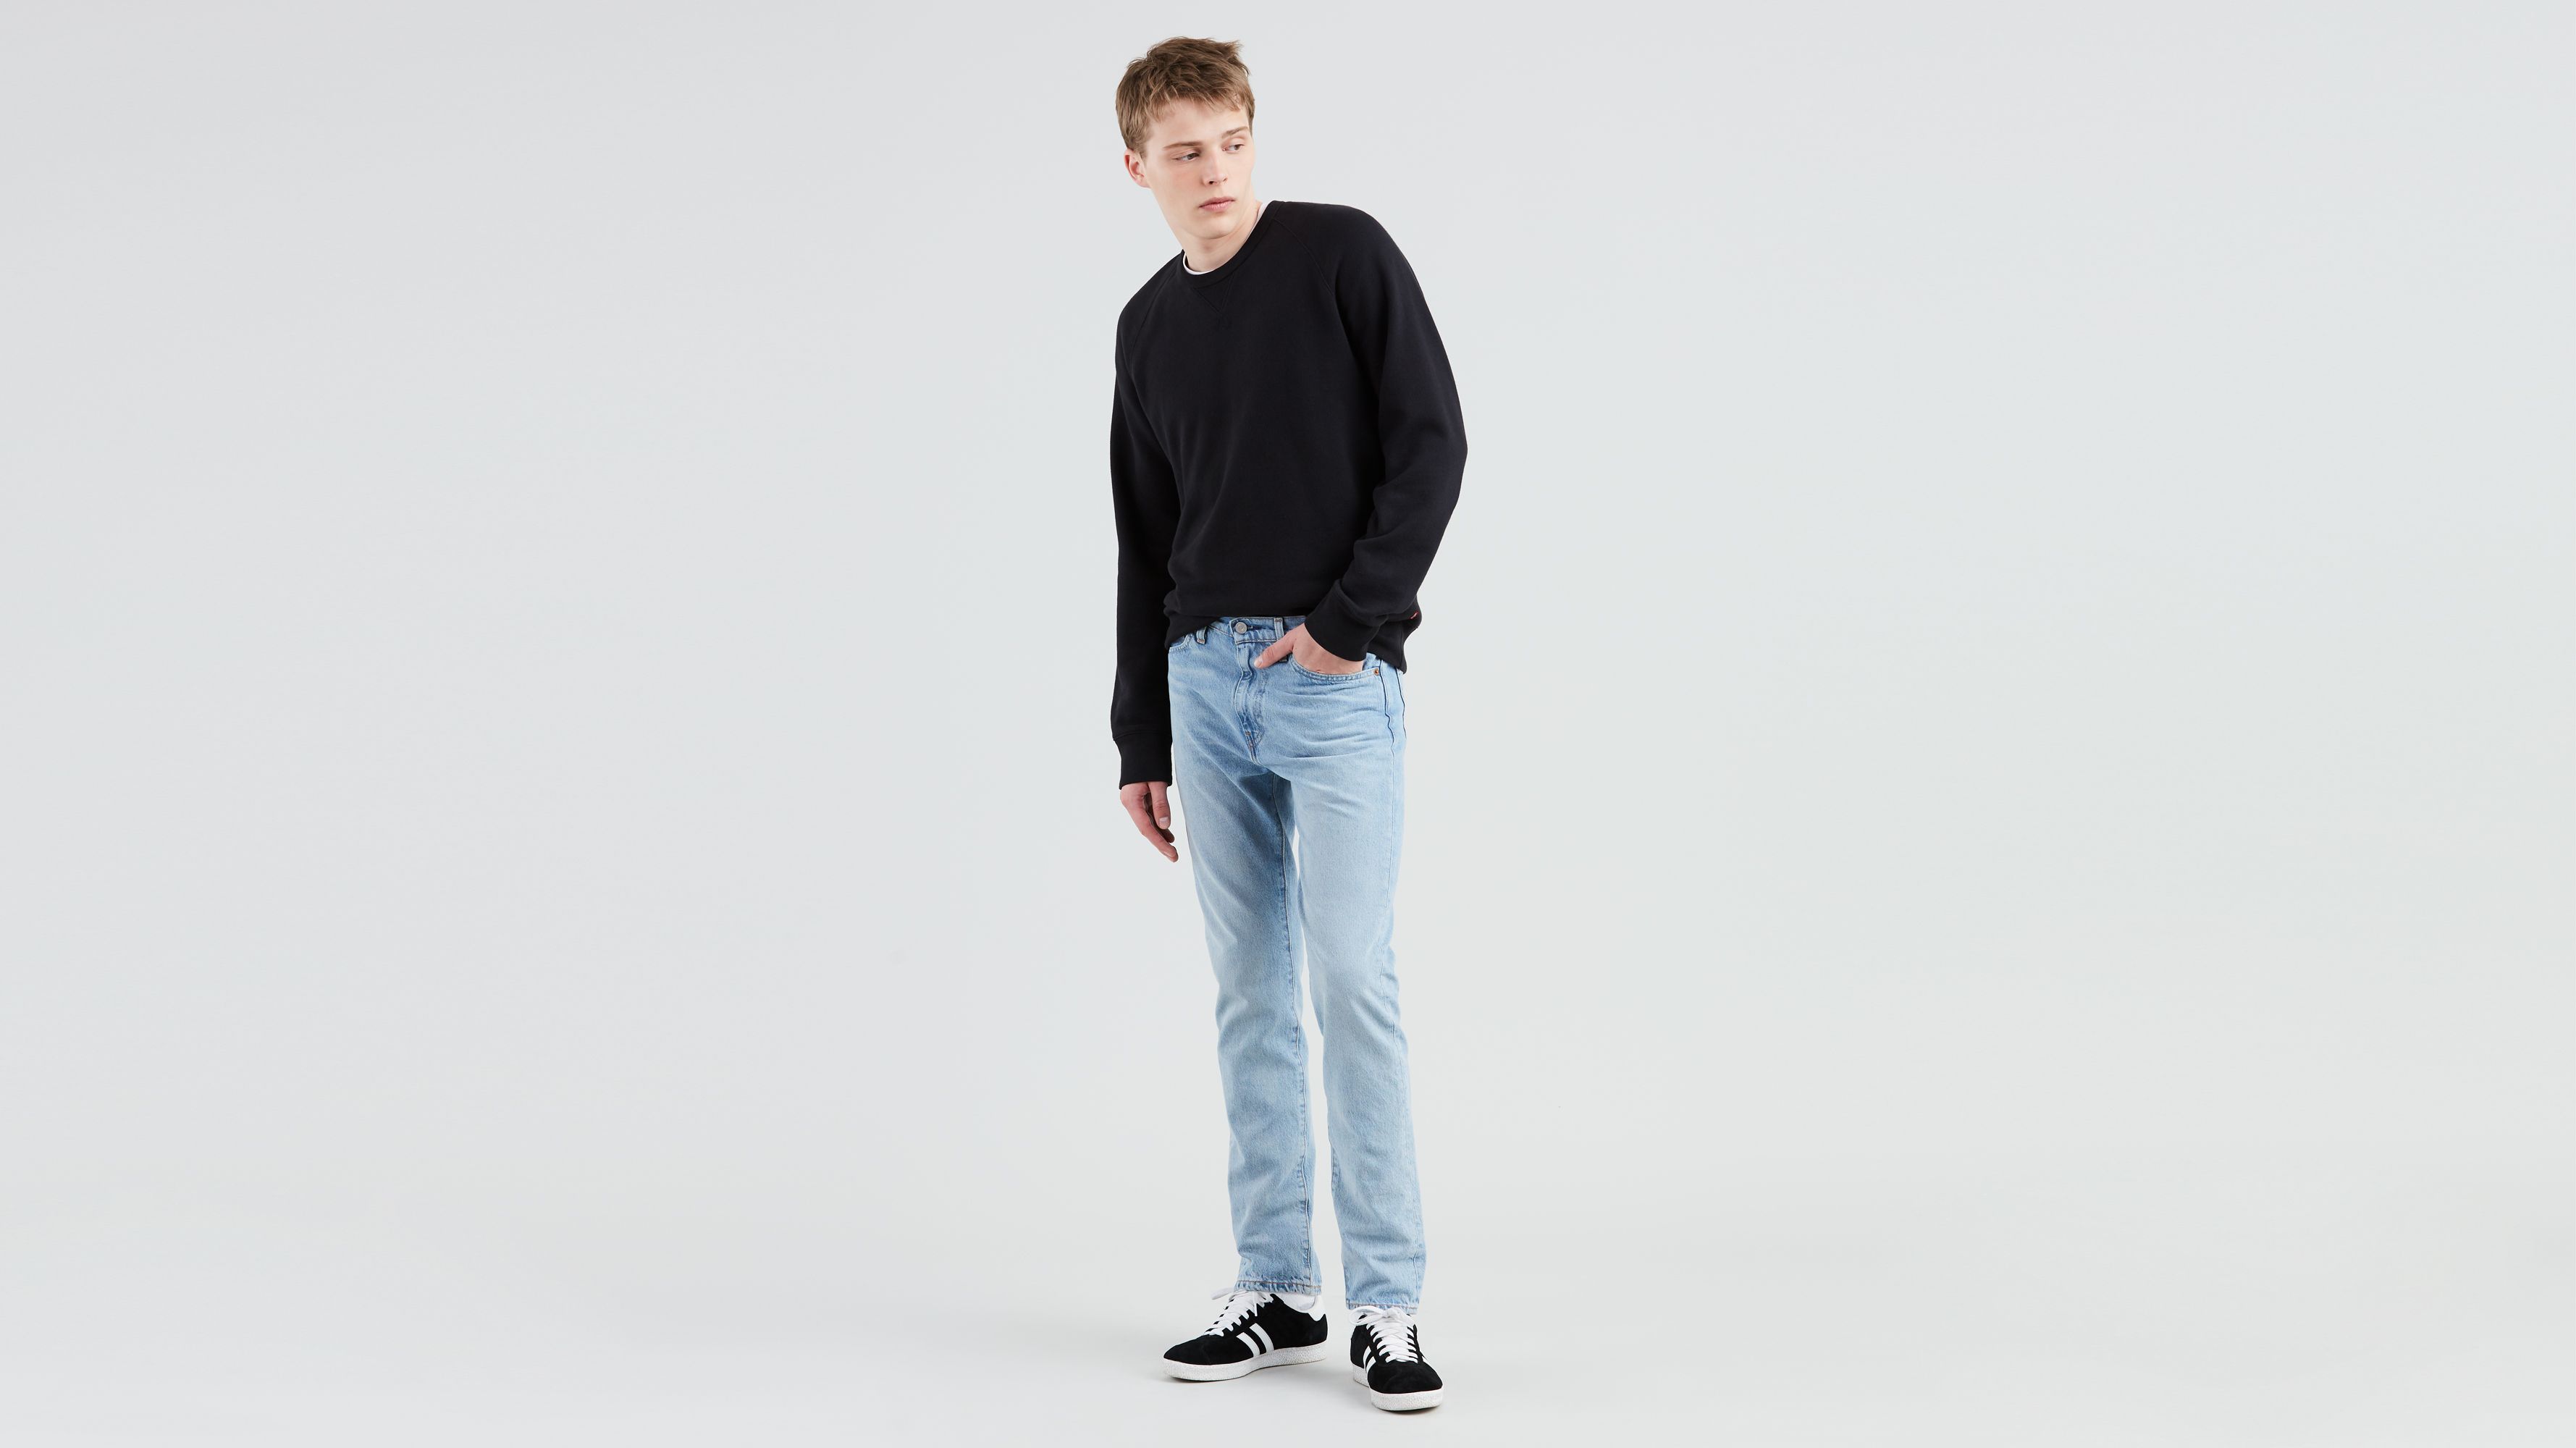 levis 510 jeans sale